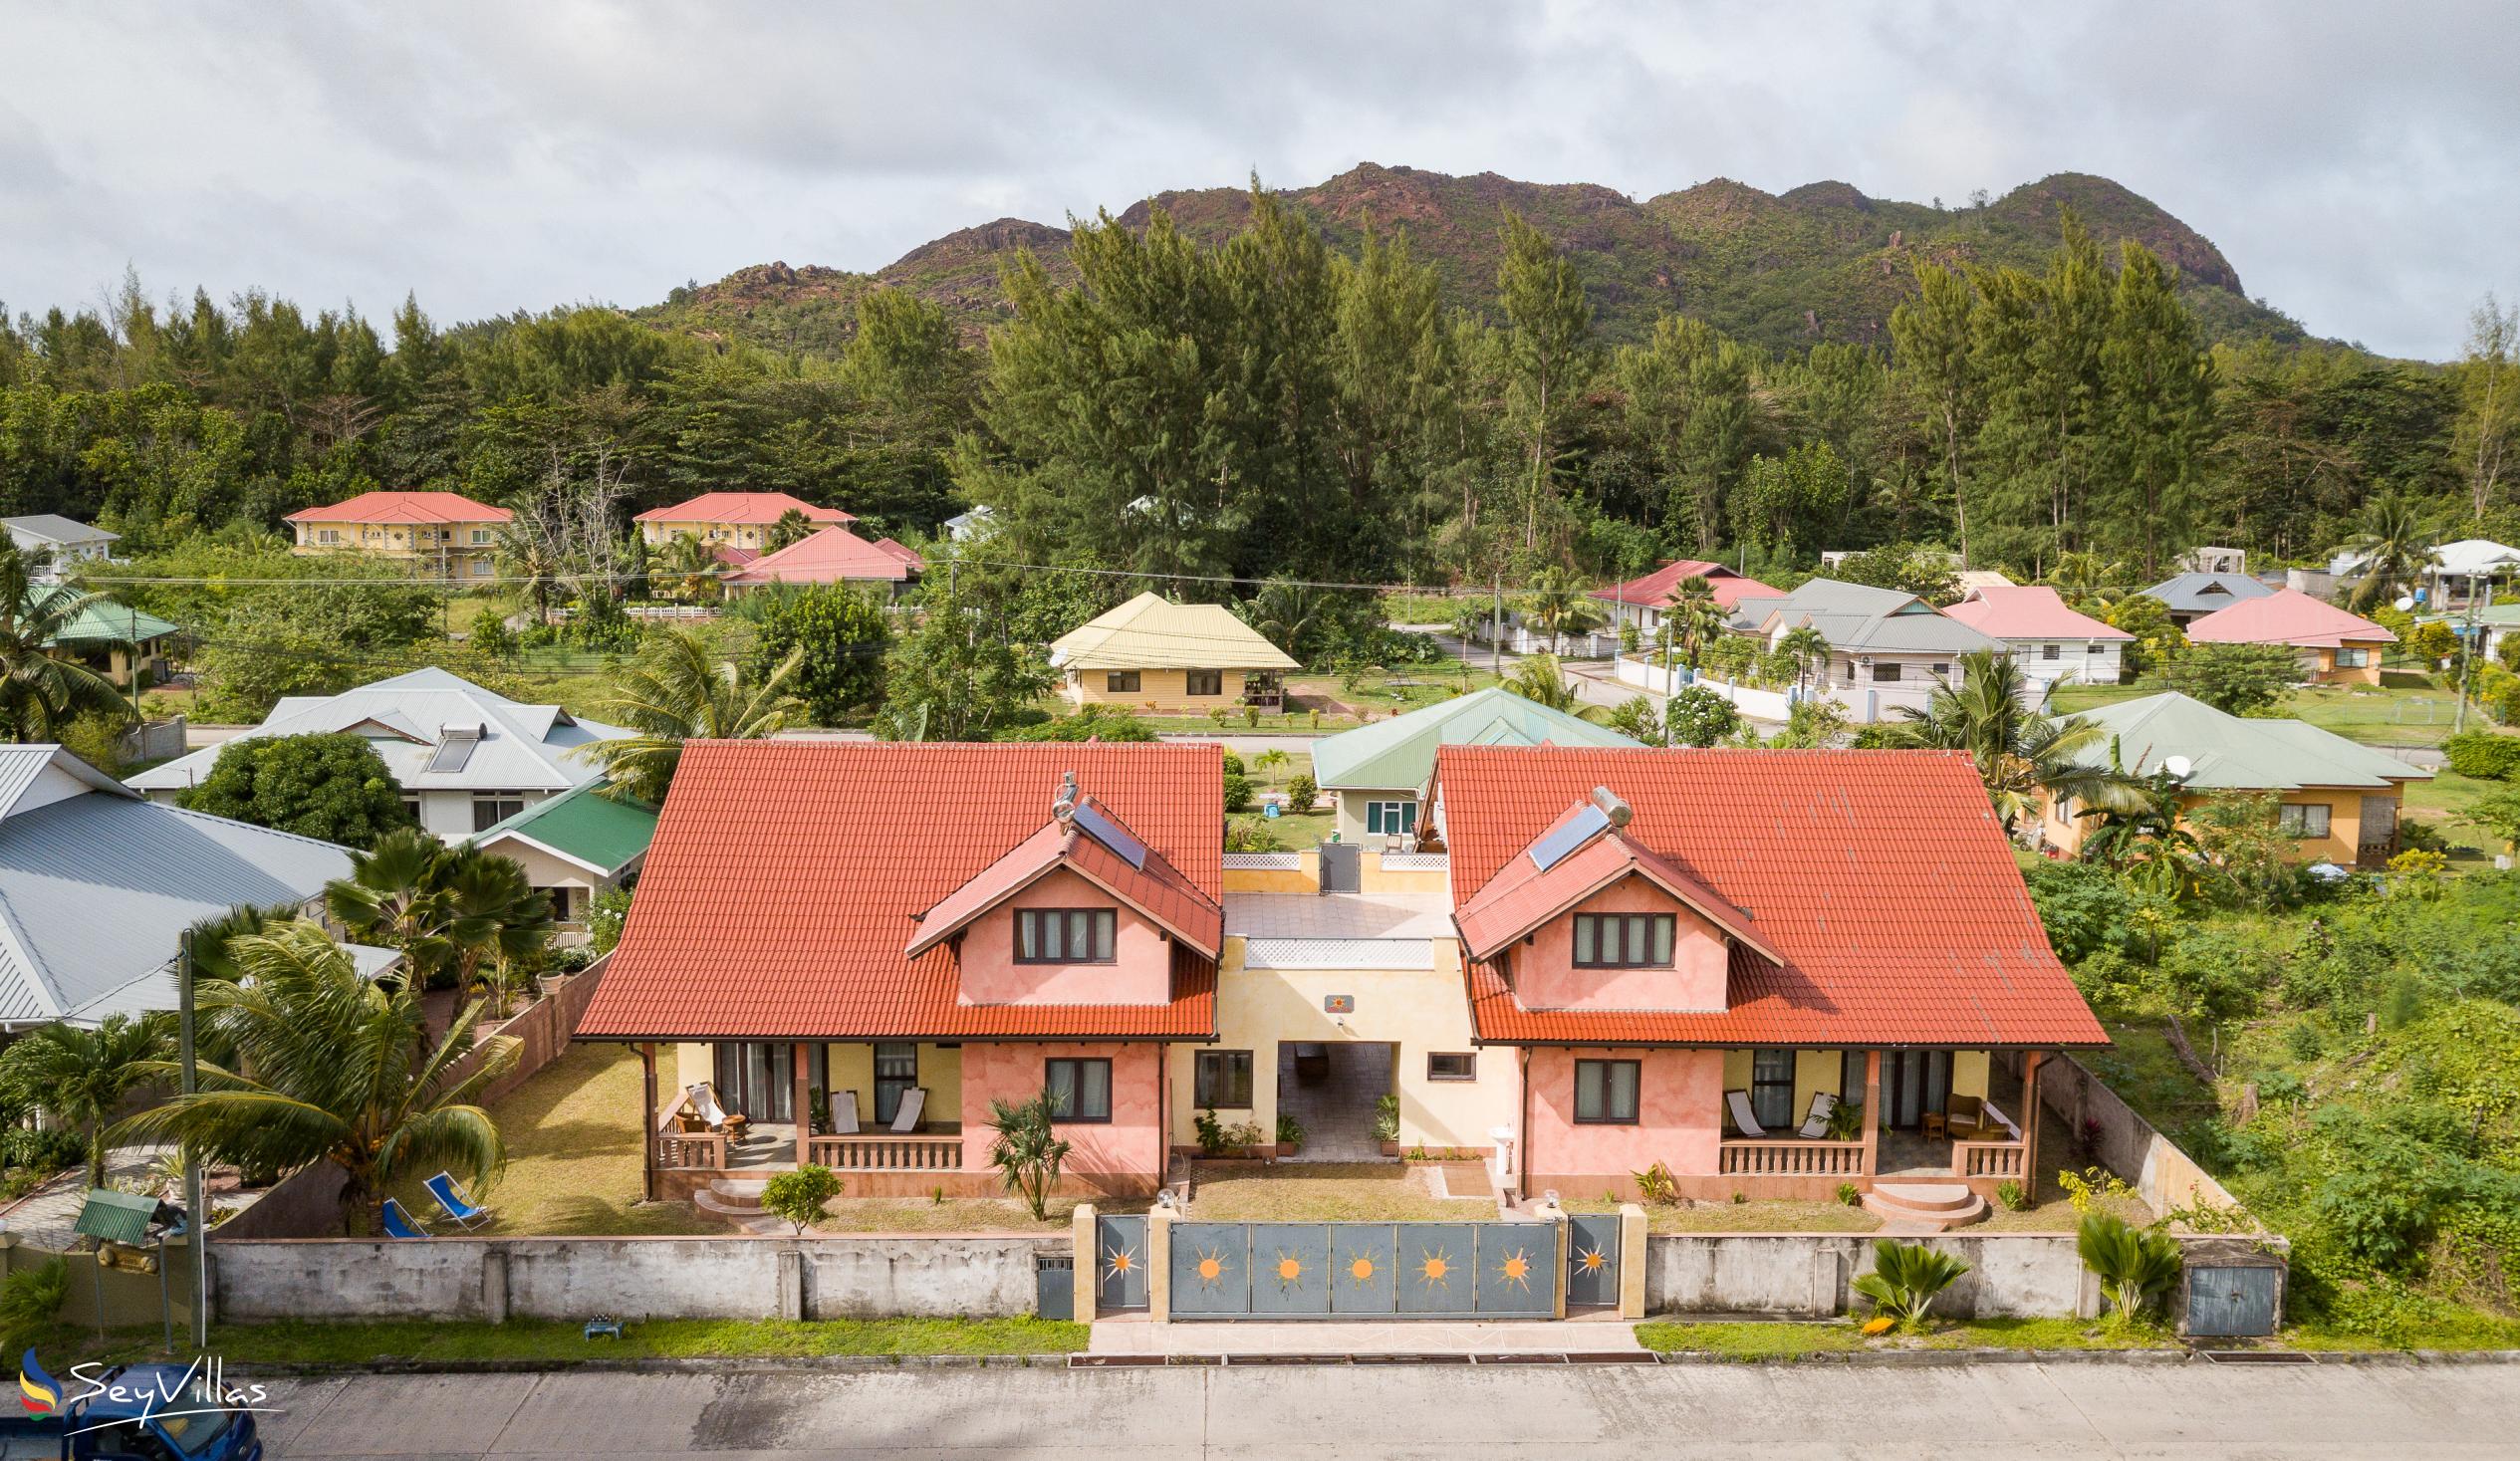 Foto 2: Villa Sole - Esterno - Praslin (Seychelles)